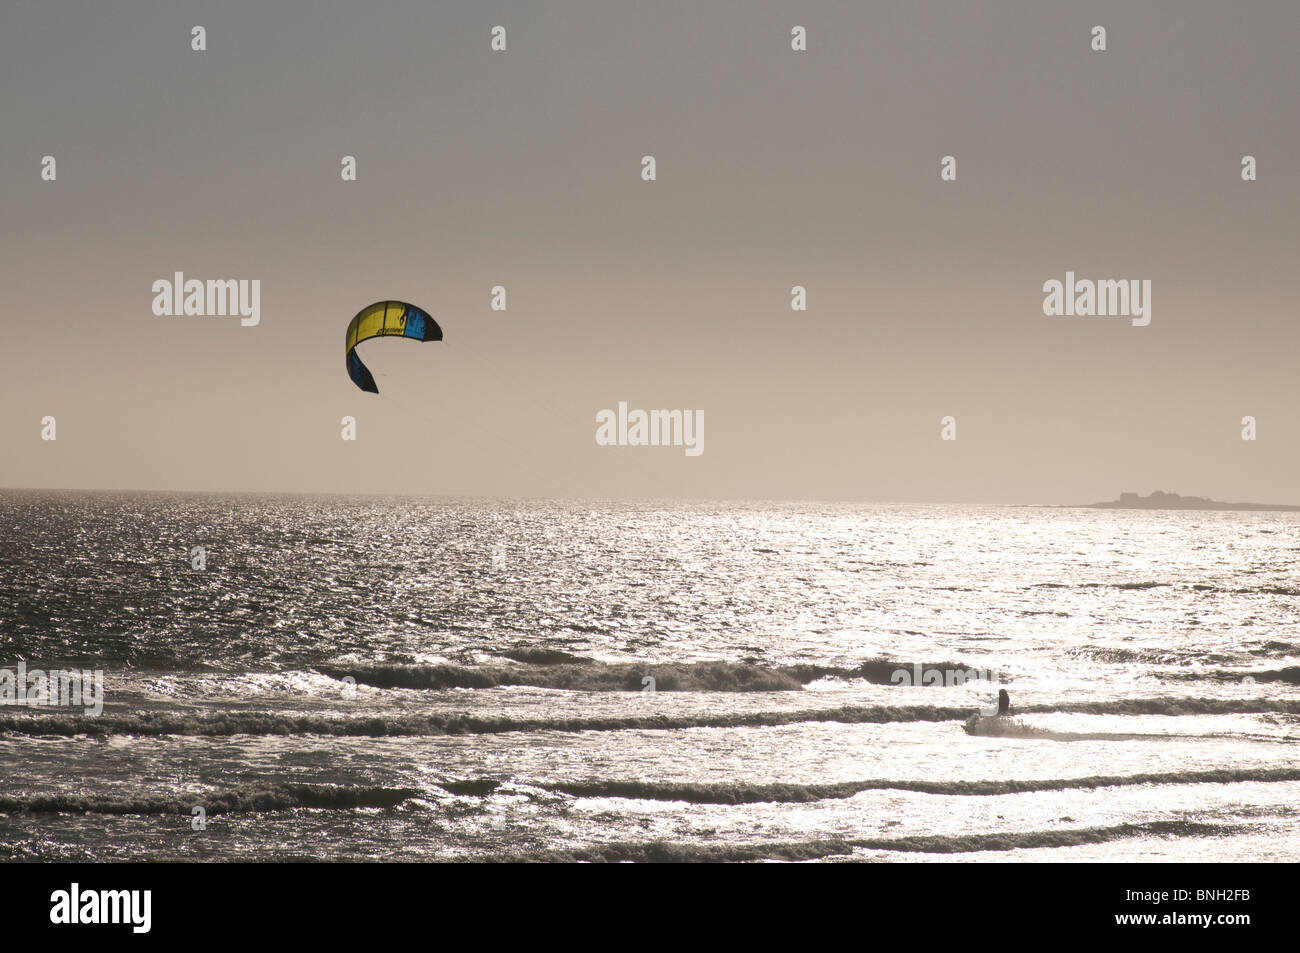 Le kitesurf au large des plages près de Half Moon Bay, Californie Banque D'Images